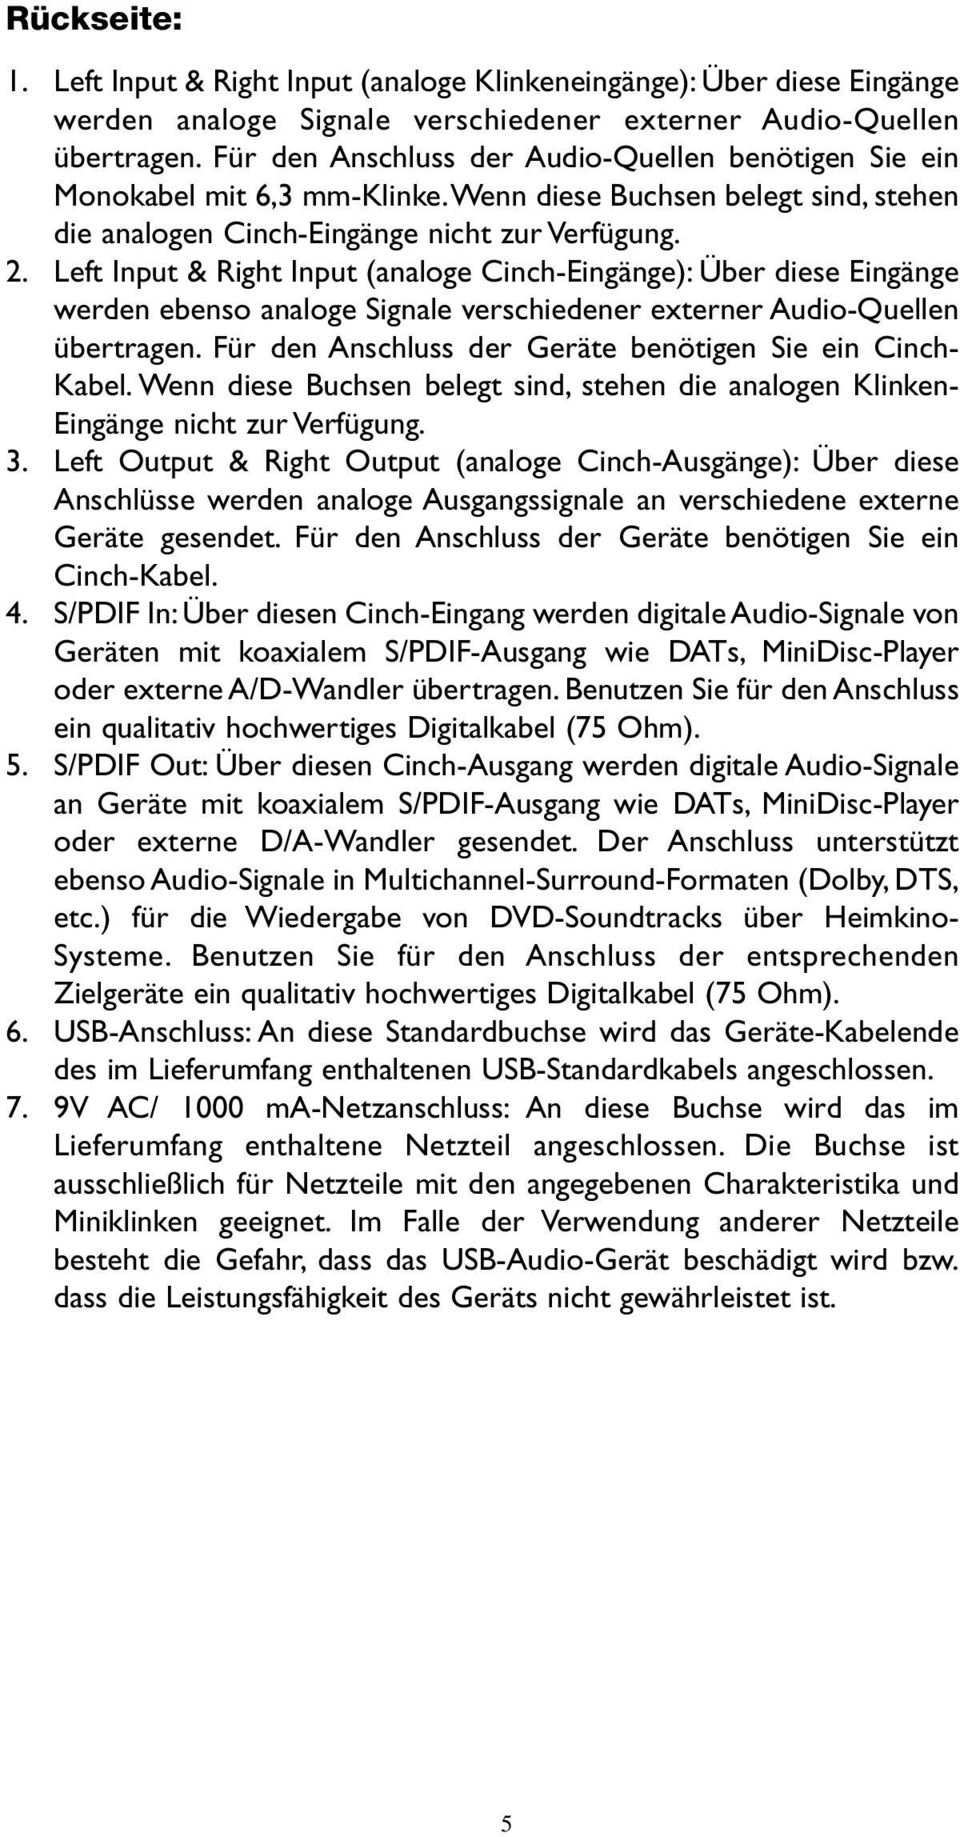 Left Input & Right Input (analoge Cinch-Eingänge): Über diese Eingänge werden ebenso analoge Signale verschiedener externer Audio-Quellen übertragen.